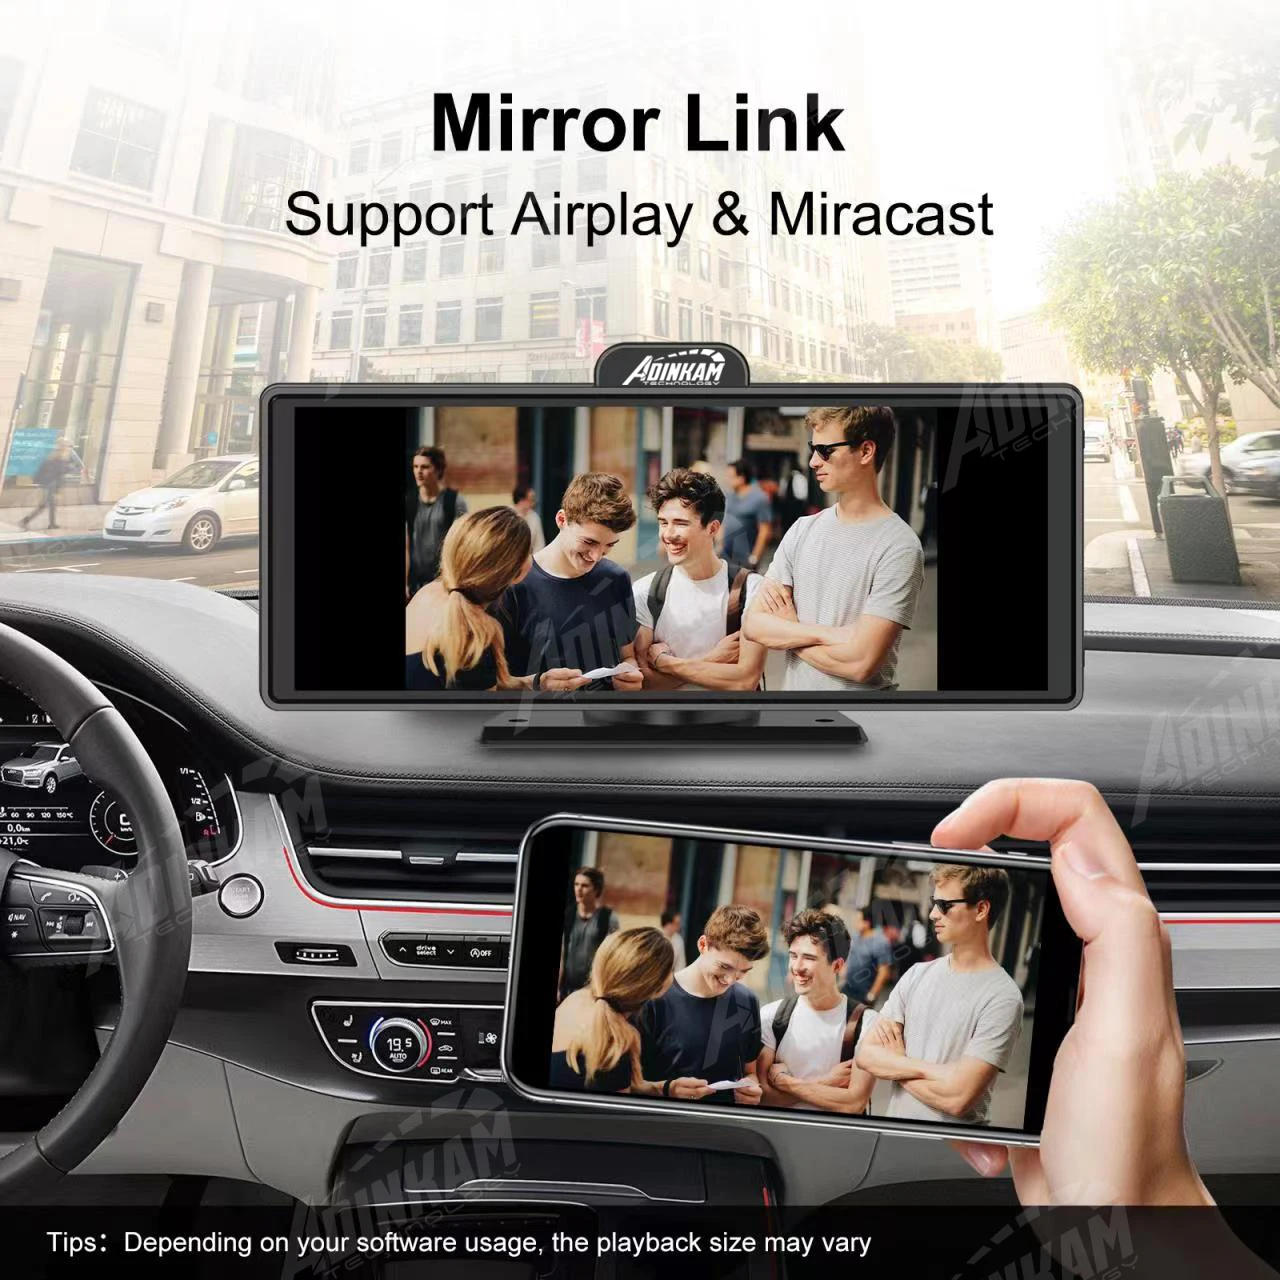 Écran pour voiture avec Carplay et Android Auto sans fil + caméra arrière  1080P AHD cadeau